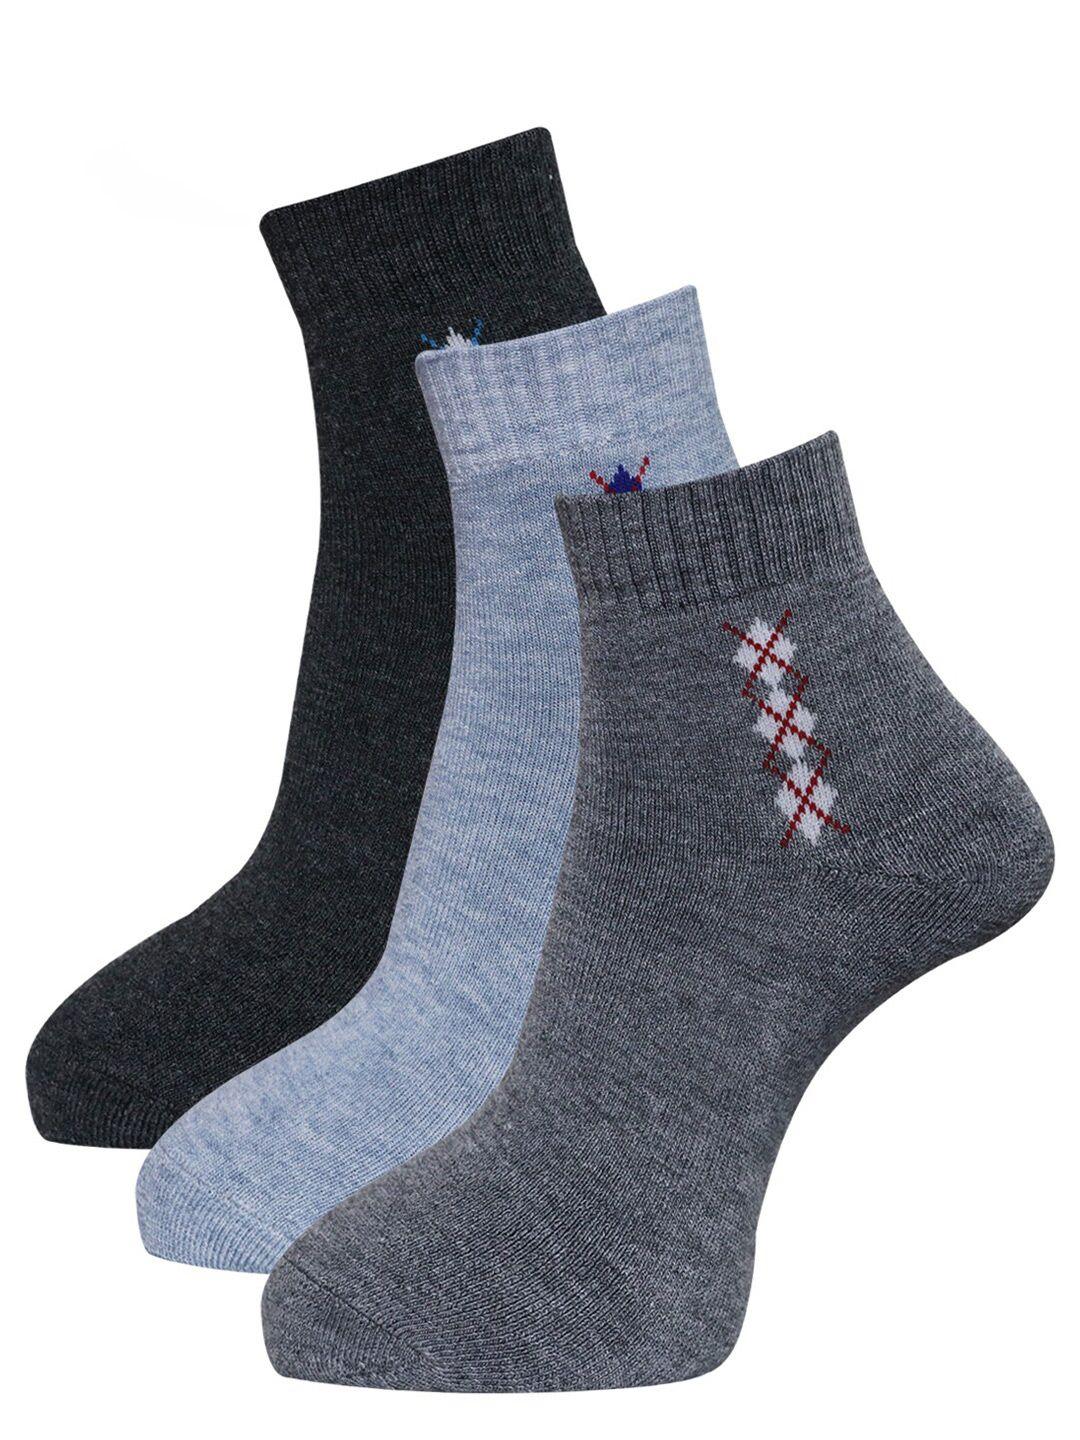 dollar socks men pack of 3 woolen ankle length socks